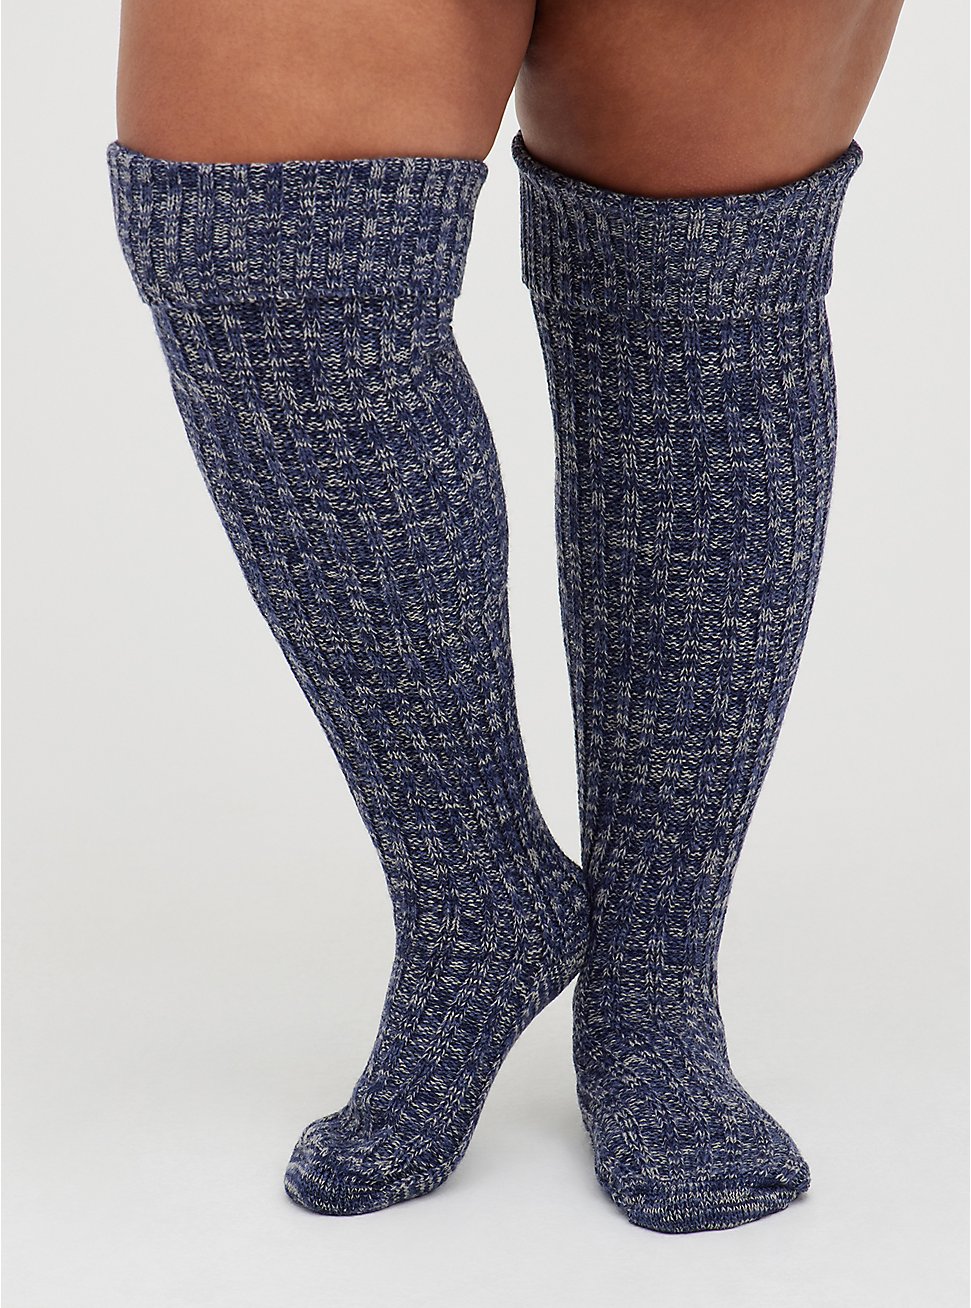 Knee High Socks - Marled Navy & Grey  , MULTI, hi-res